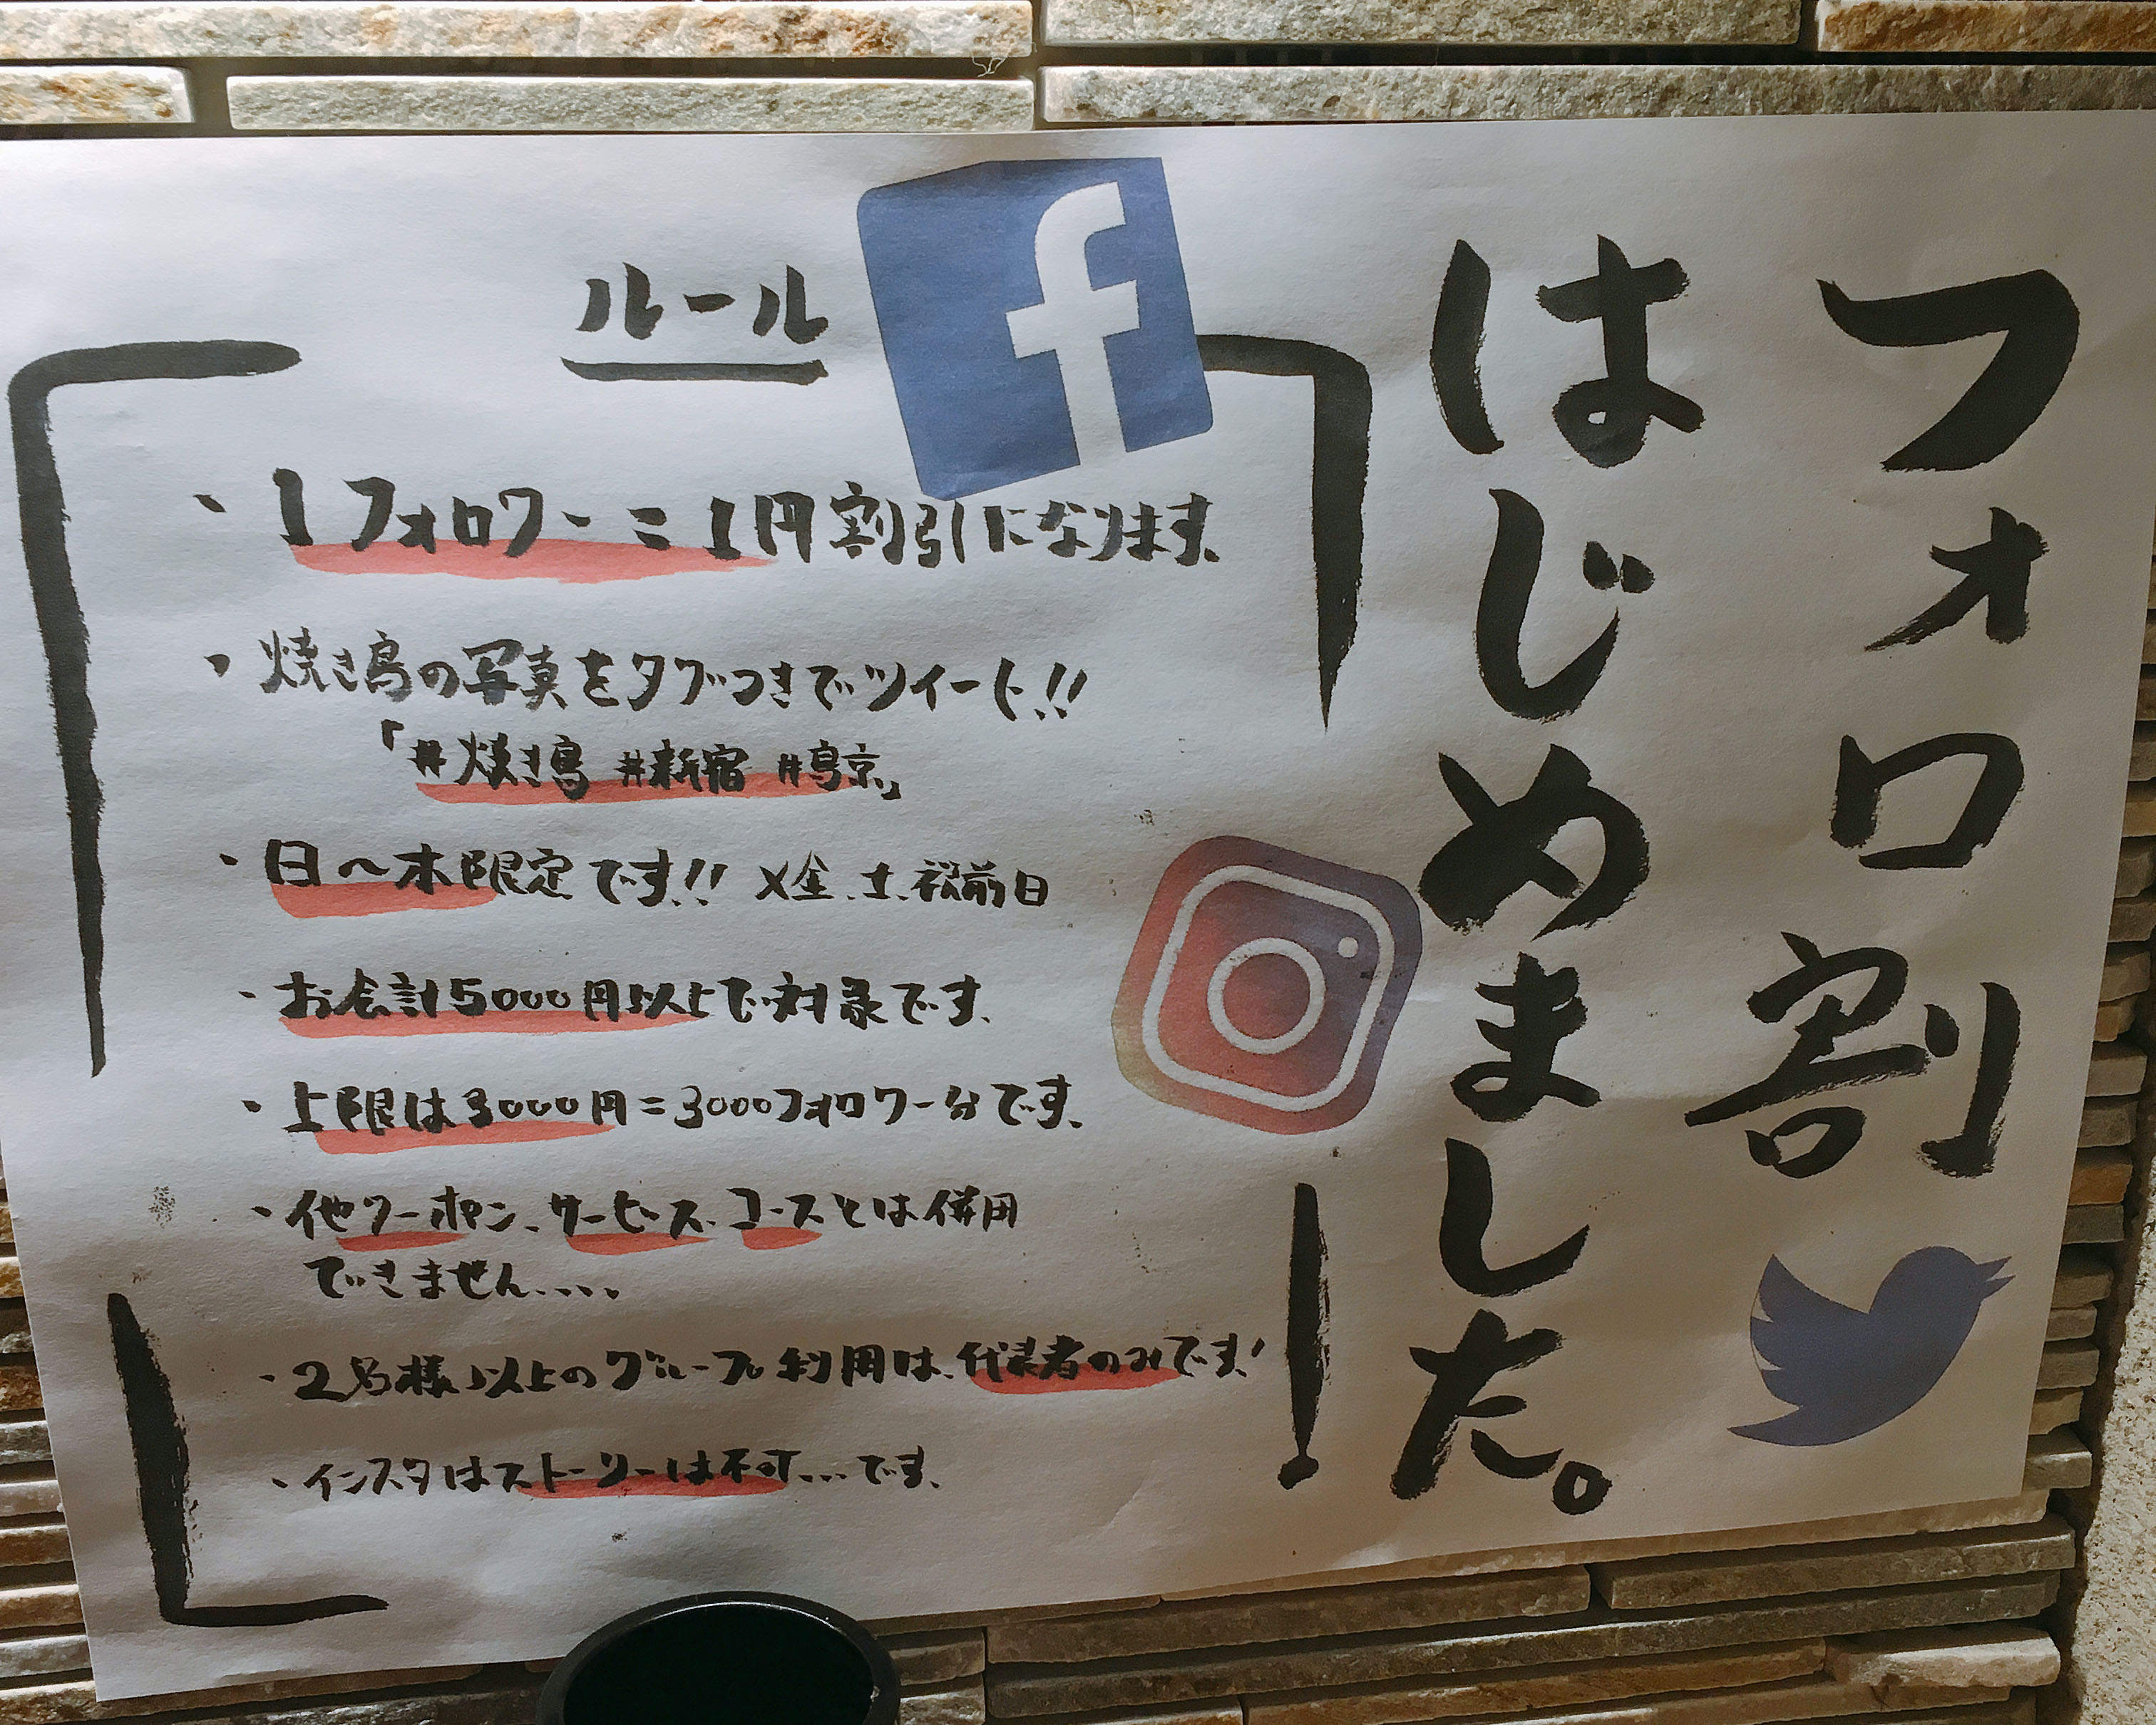 Twitter】あまり話題になってないけど、歌舞伎町「鳥京」で1フォロワー